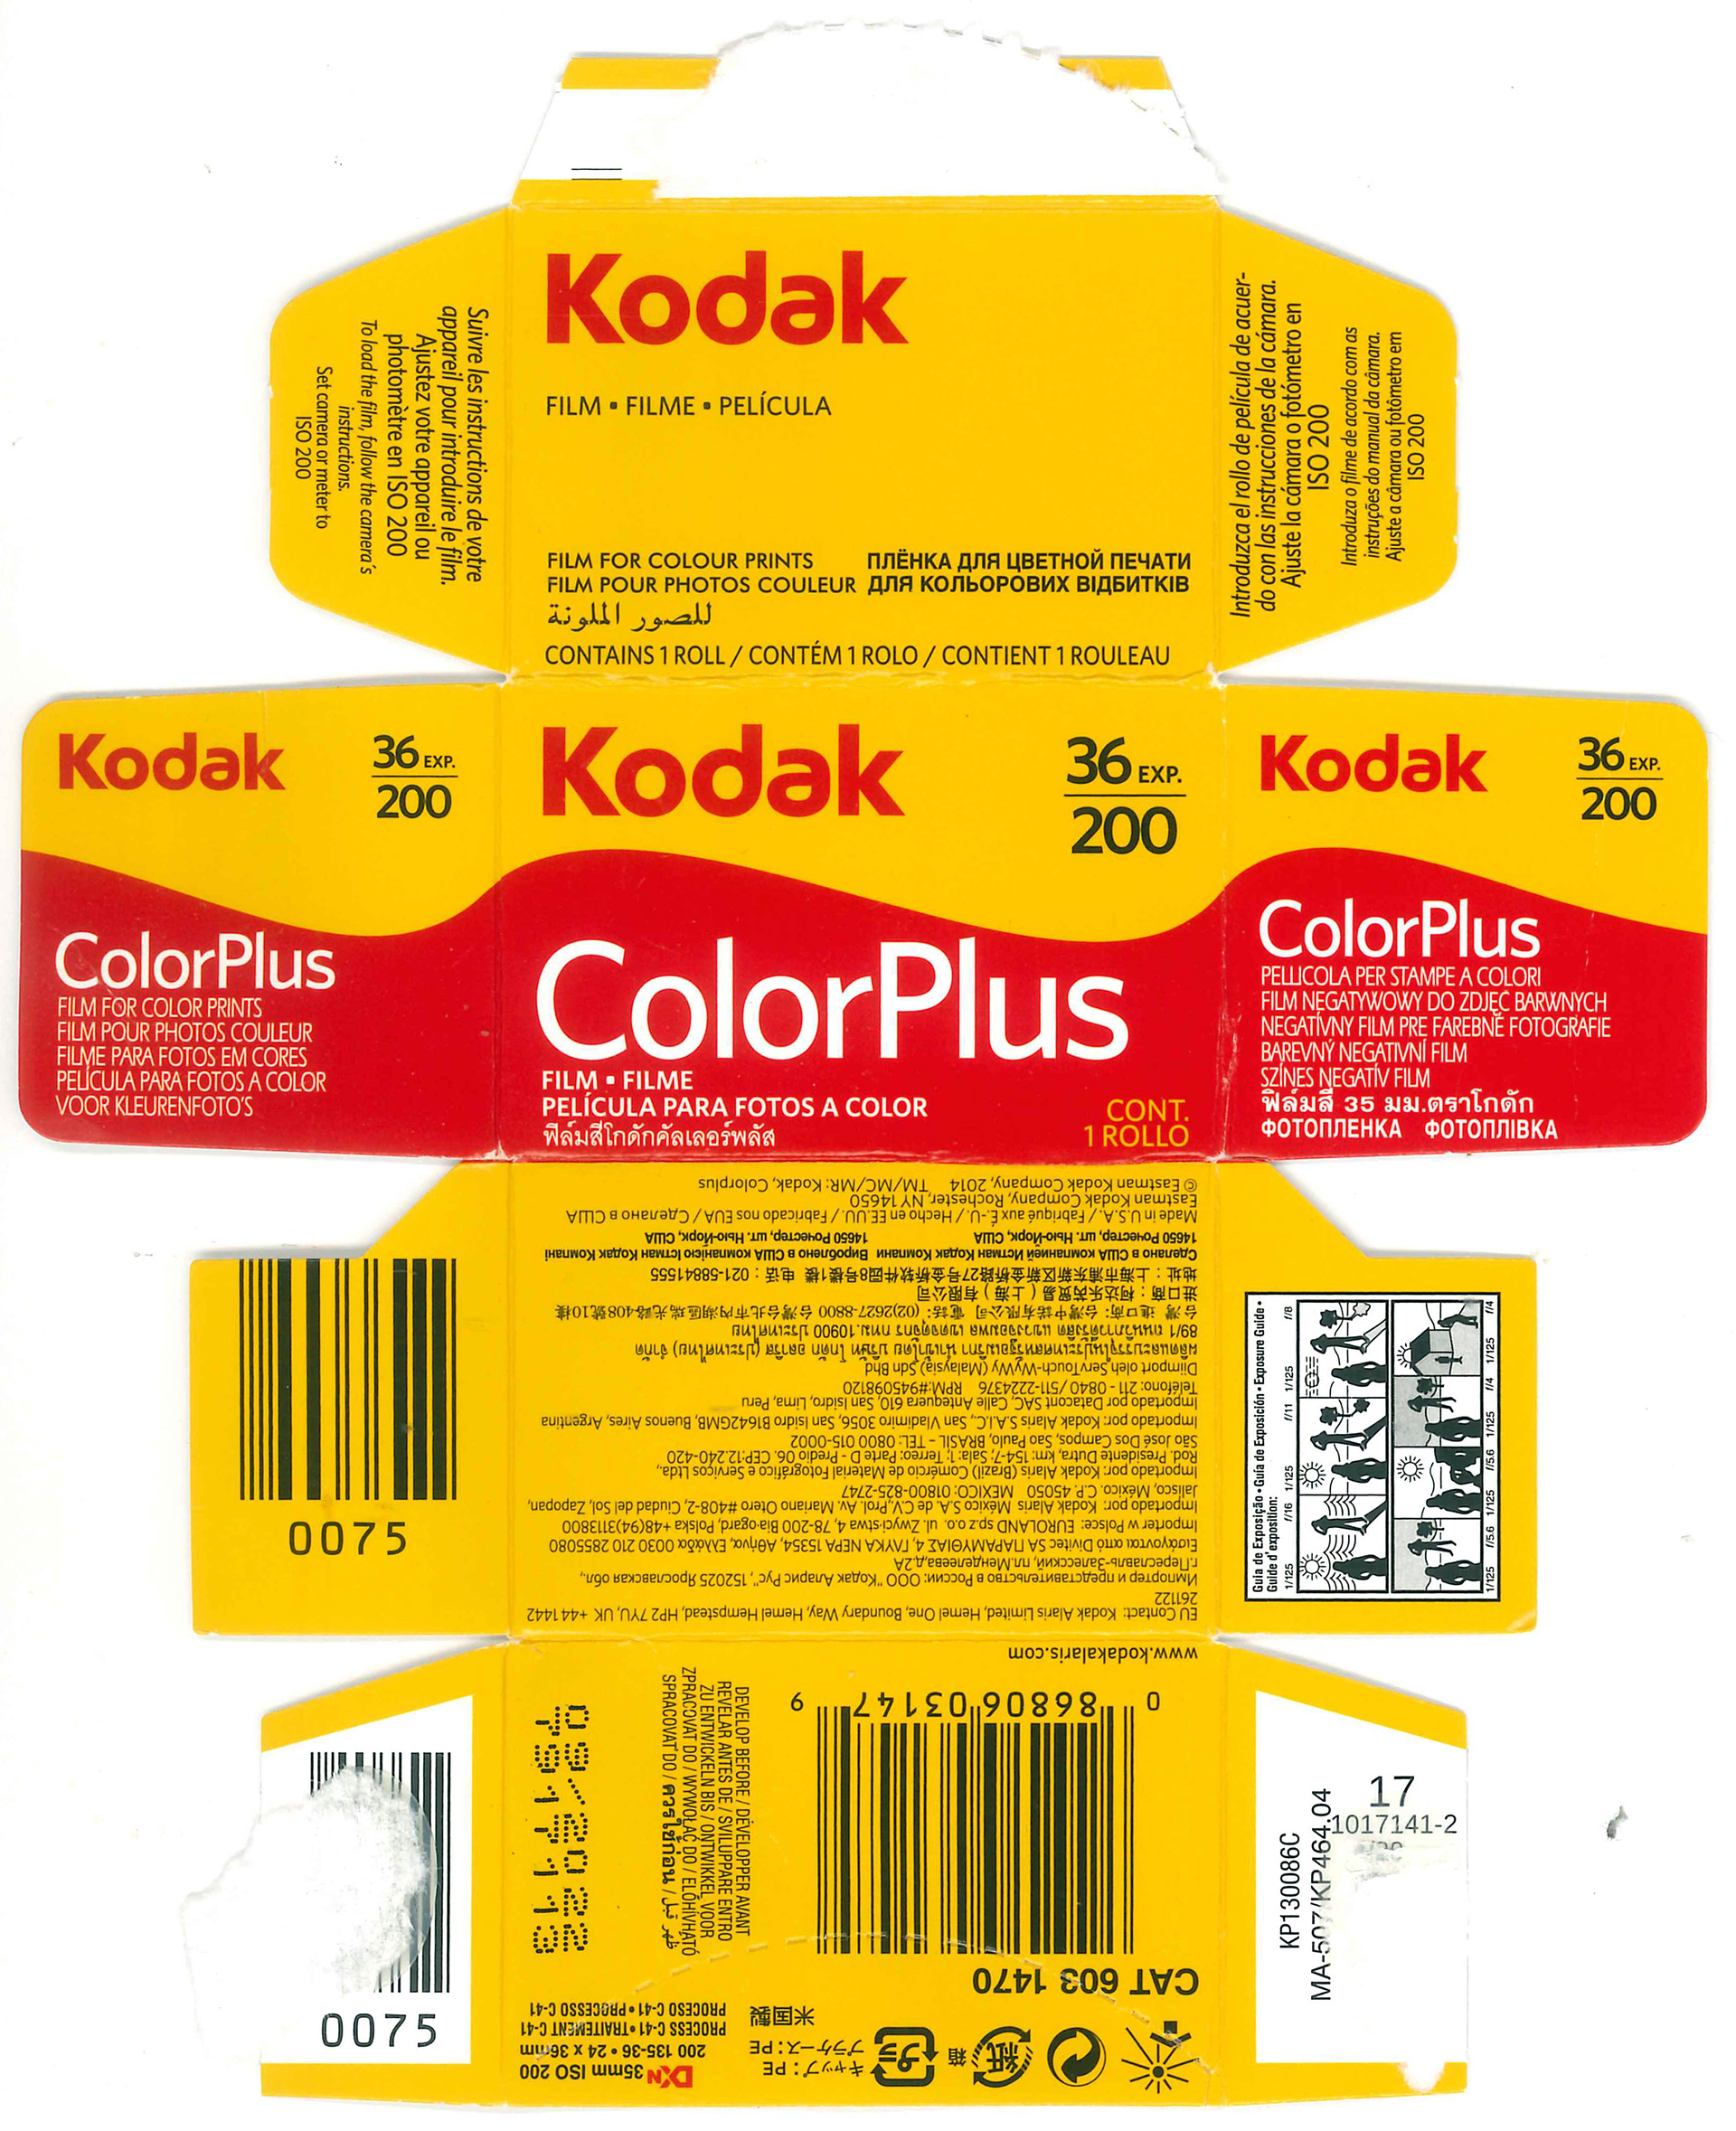 Kodak ColorPlus 200 Sample Pictures